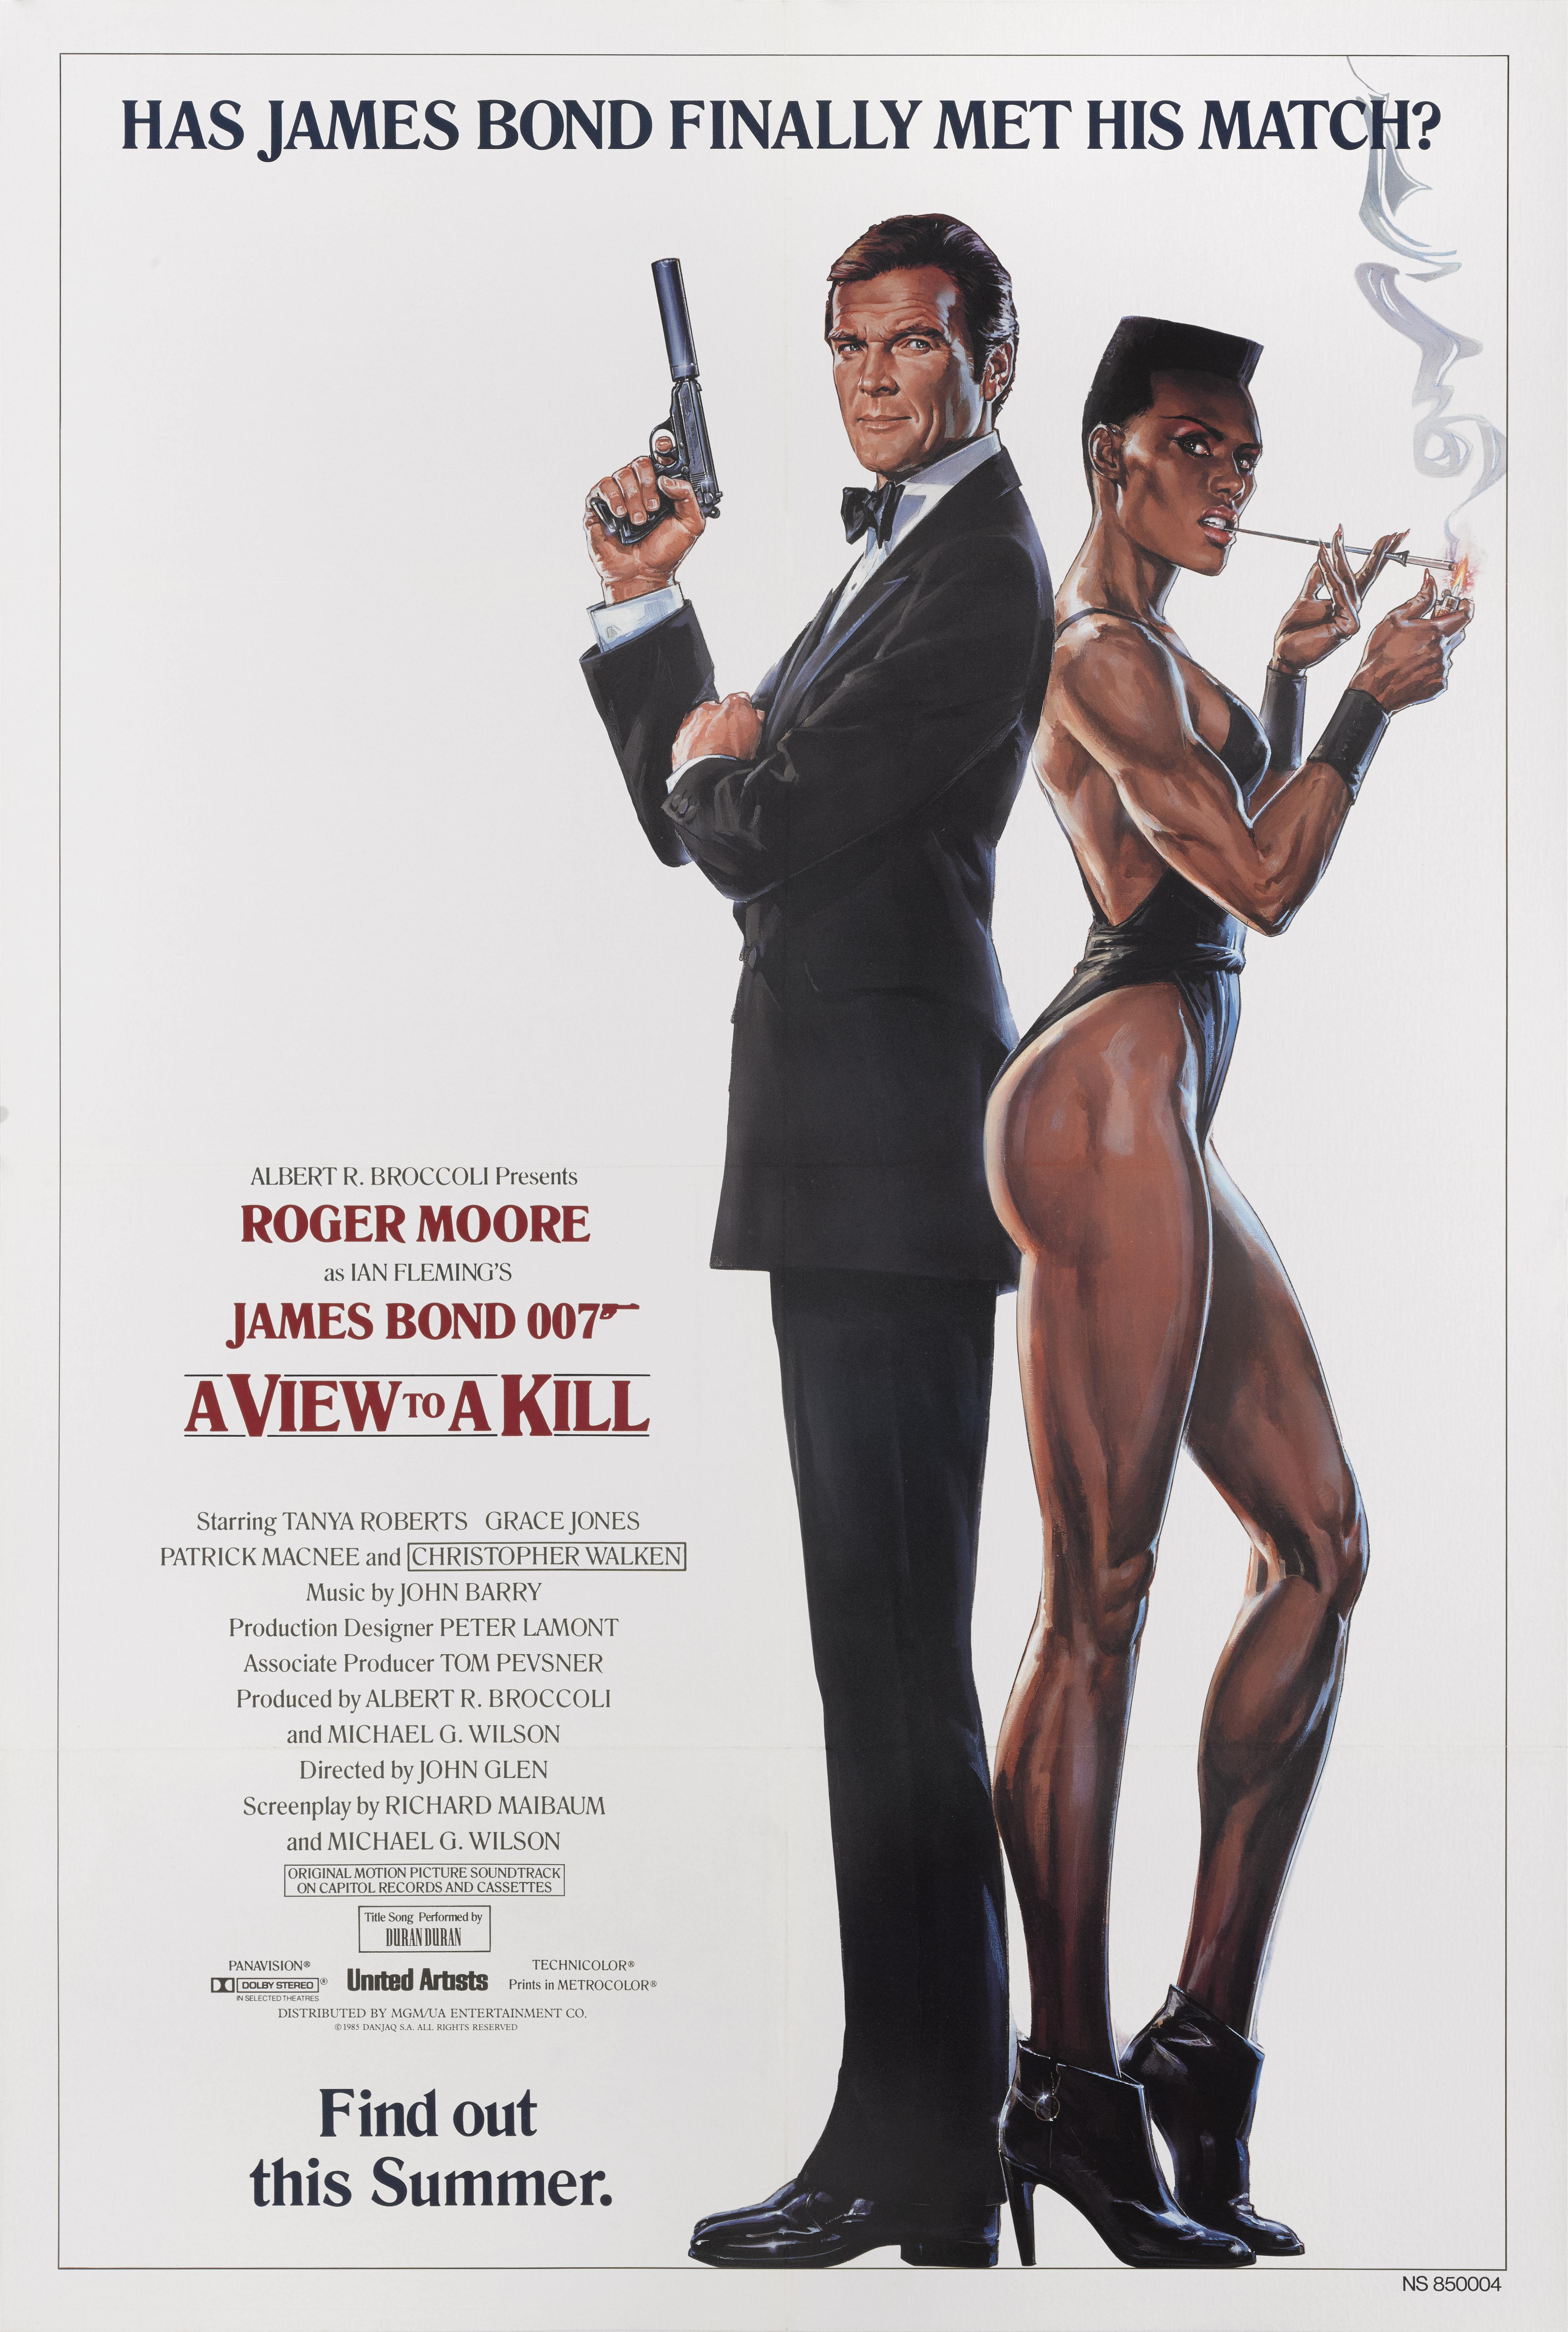 Original US Advance White Style Filmplakat für Roger Moore und Grace Jones 1985 Bond Film.
Die Regie bei diesem Film führte John Glen.
Dieses Plakat ist die Erhaltung Leinen zurück Es wäre in einem starken Rohr gerollt und versendet von Federal